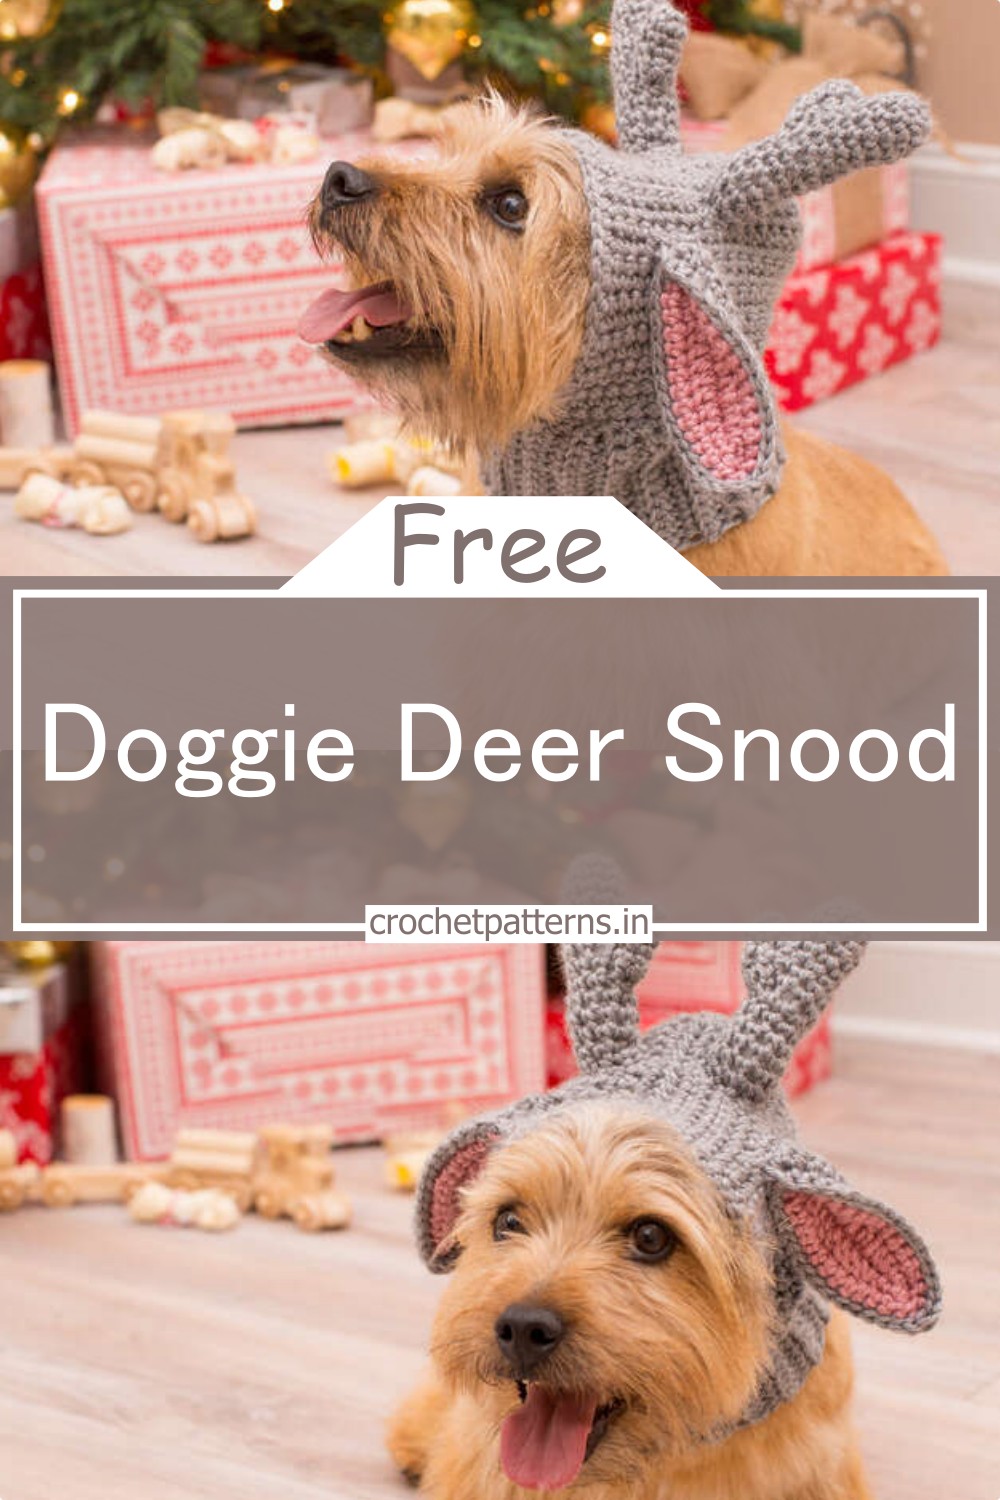 Doggie Deer Snood